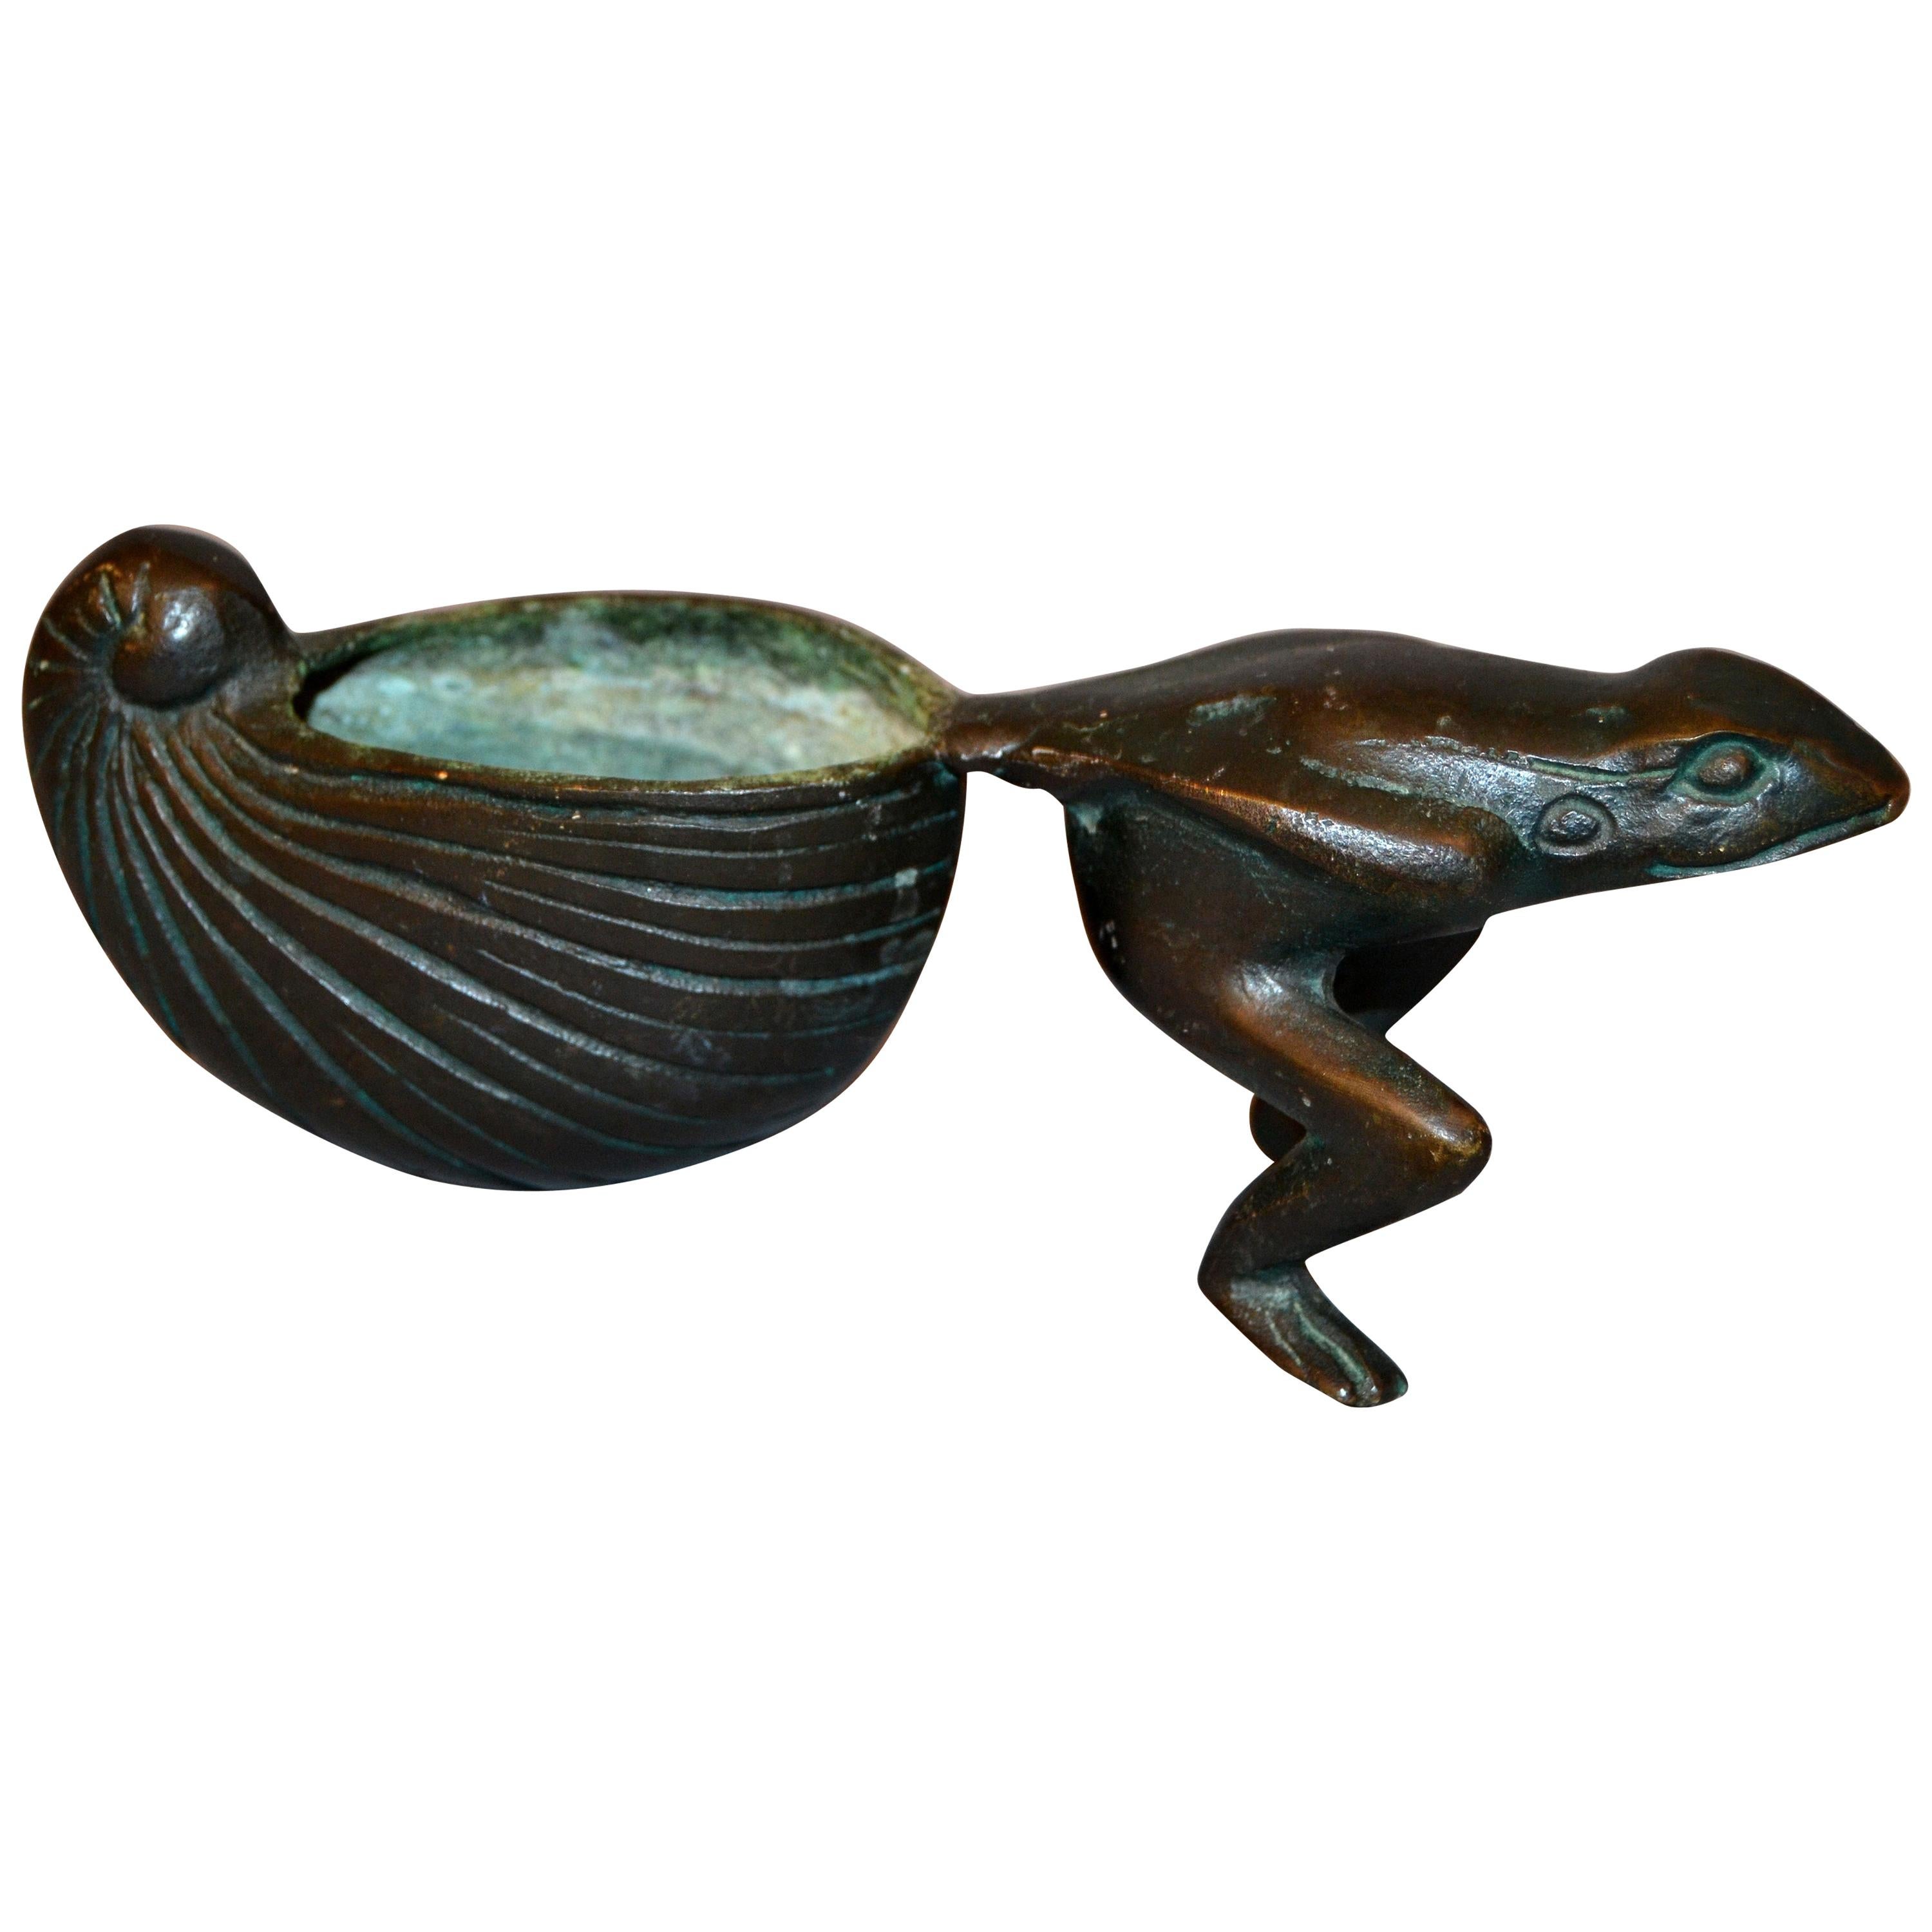 Whimsical Asian Inspired Bronze Frog Animal Sculpture Bowl Flowerpot Planter